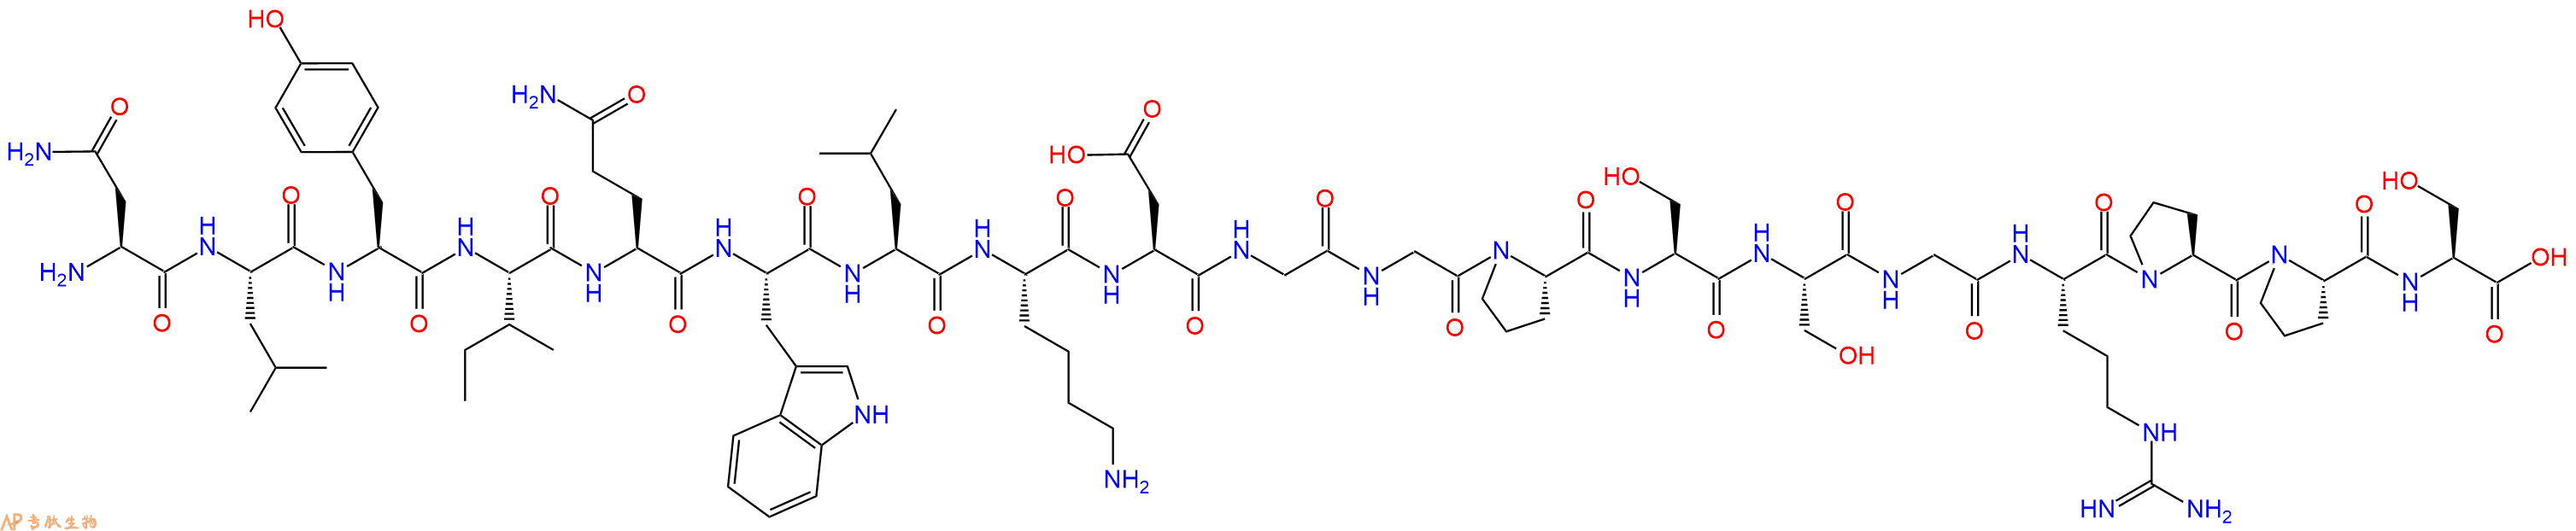 专肽生物产品H2N-Asn-Leu-Tyr-Ile-Gln-Trp-Leu-Lys-Asp-Gly-Gly-Pr